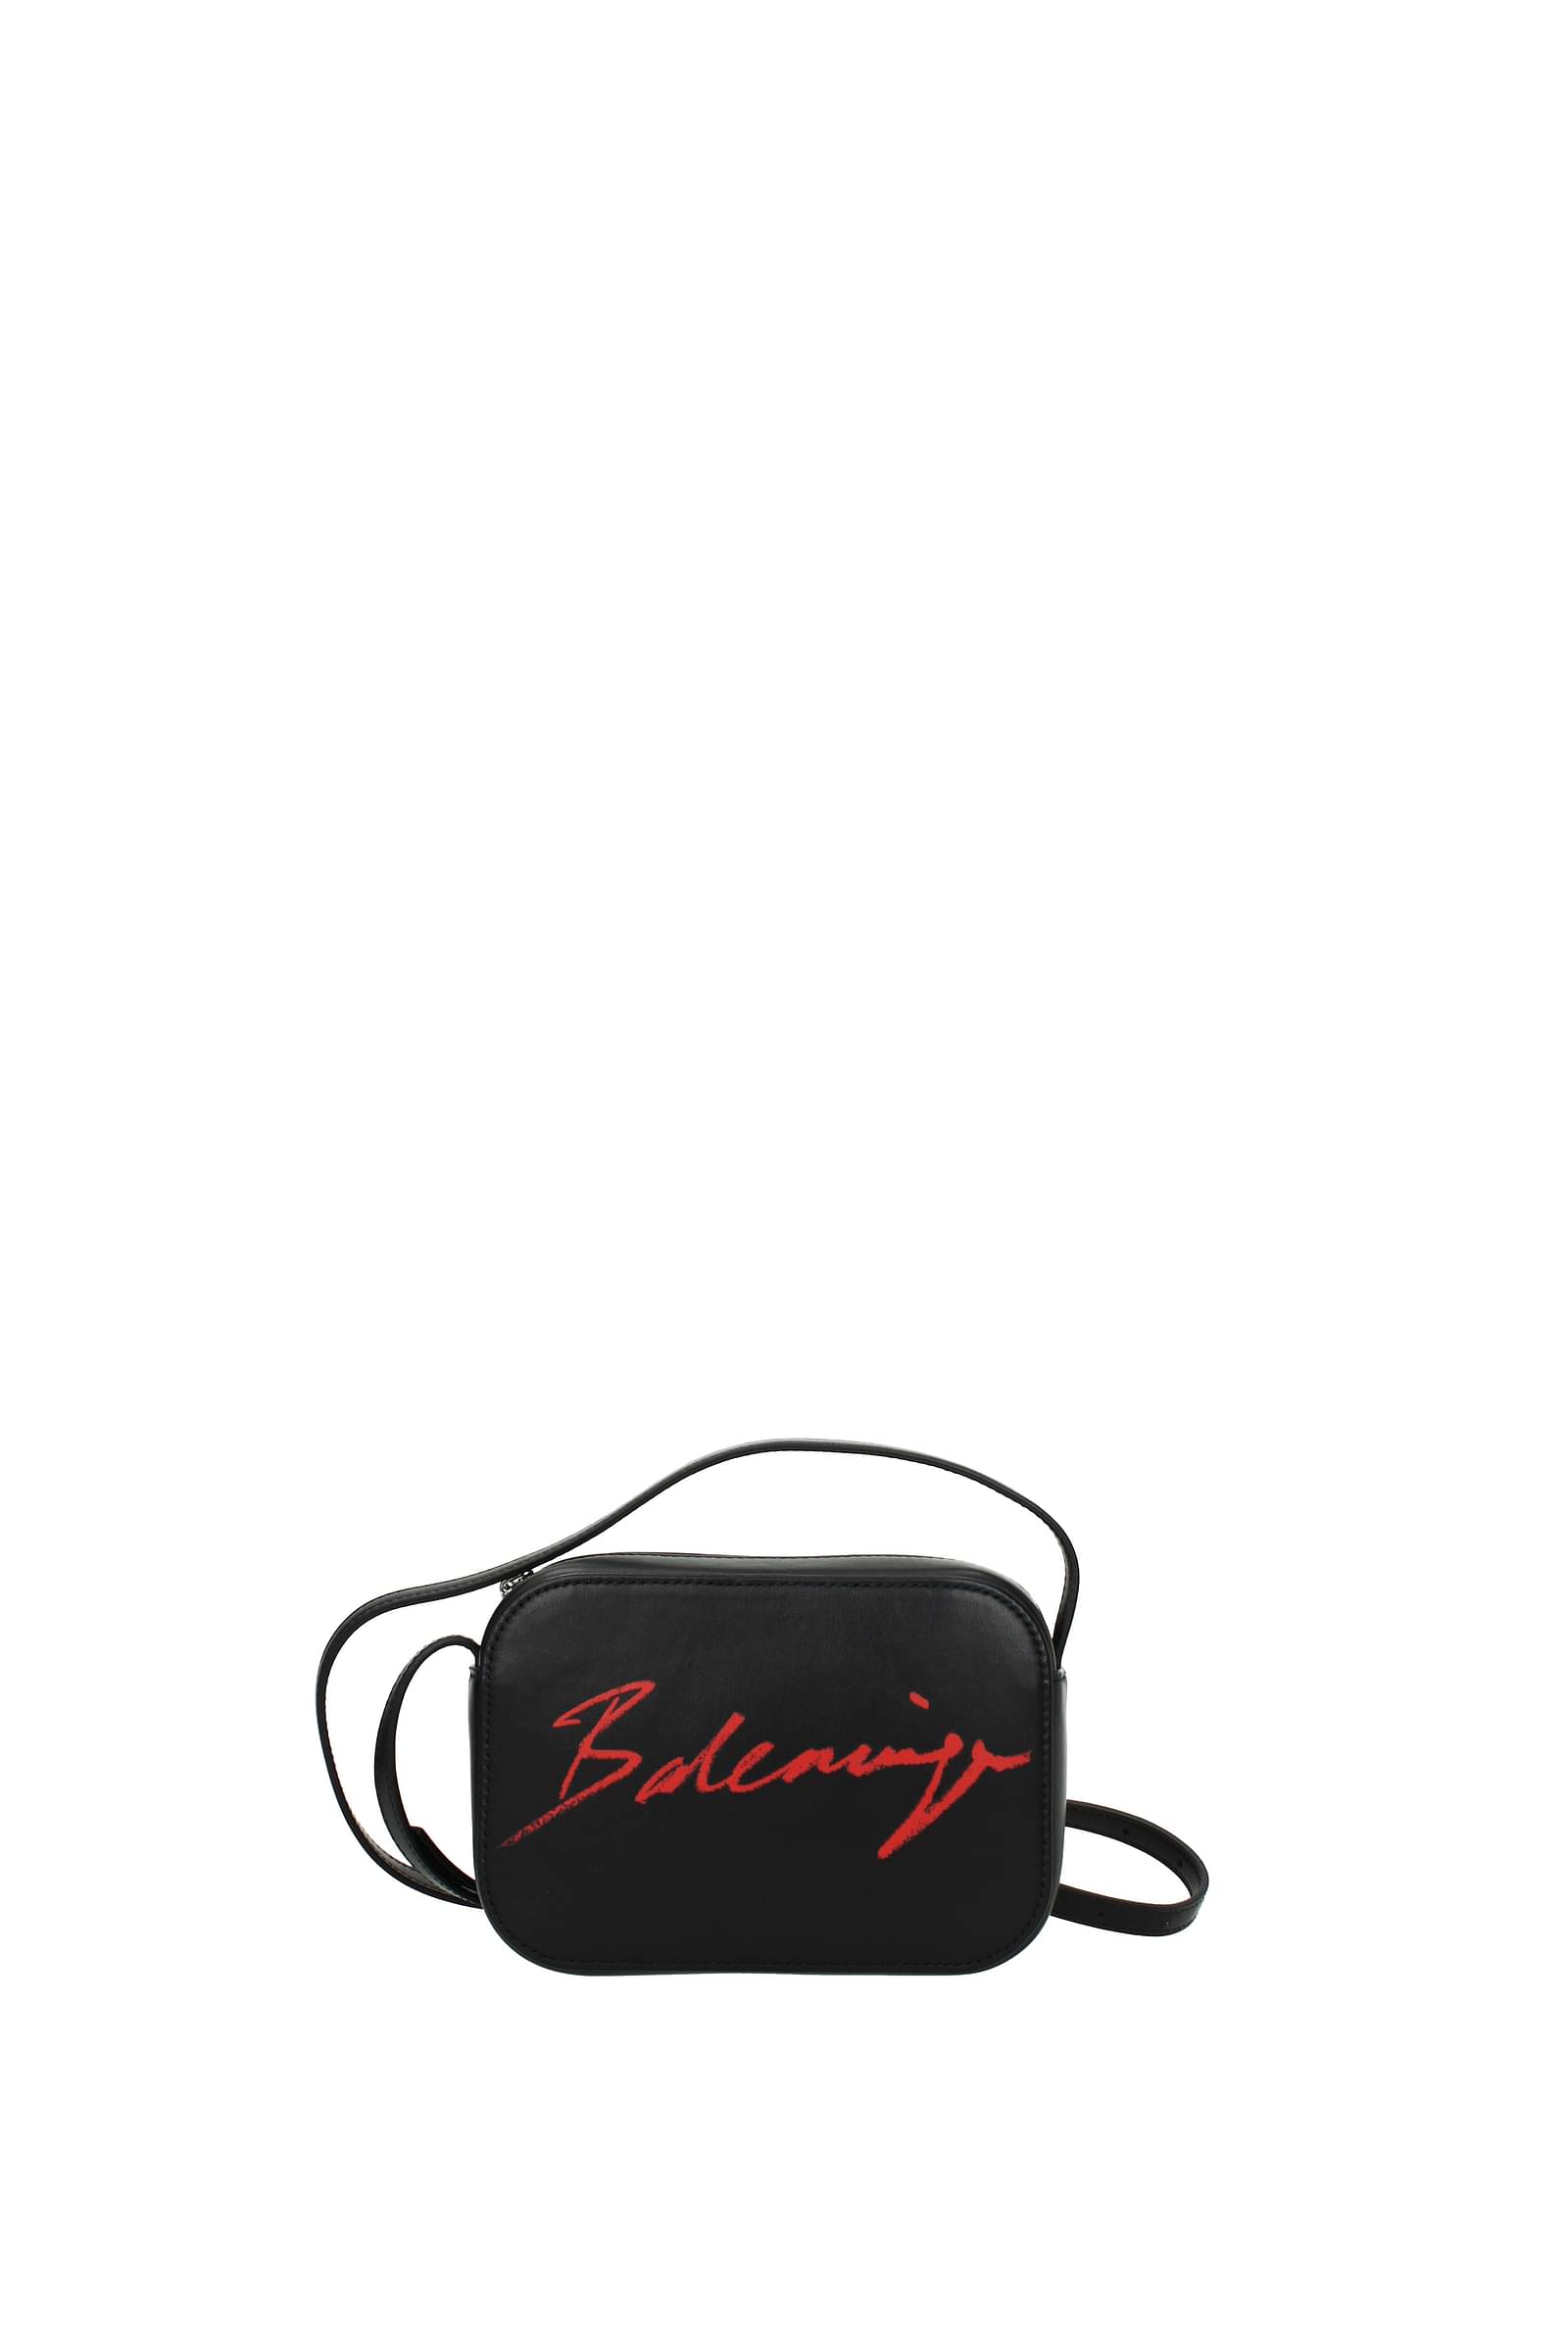 Balenciaga Messenger  Crossbody Bags for Women  Shop Now on FARFETCH